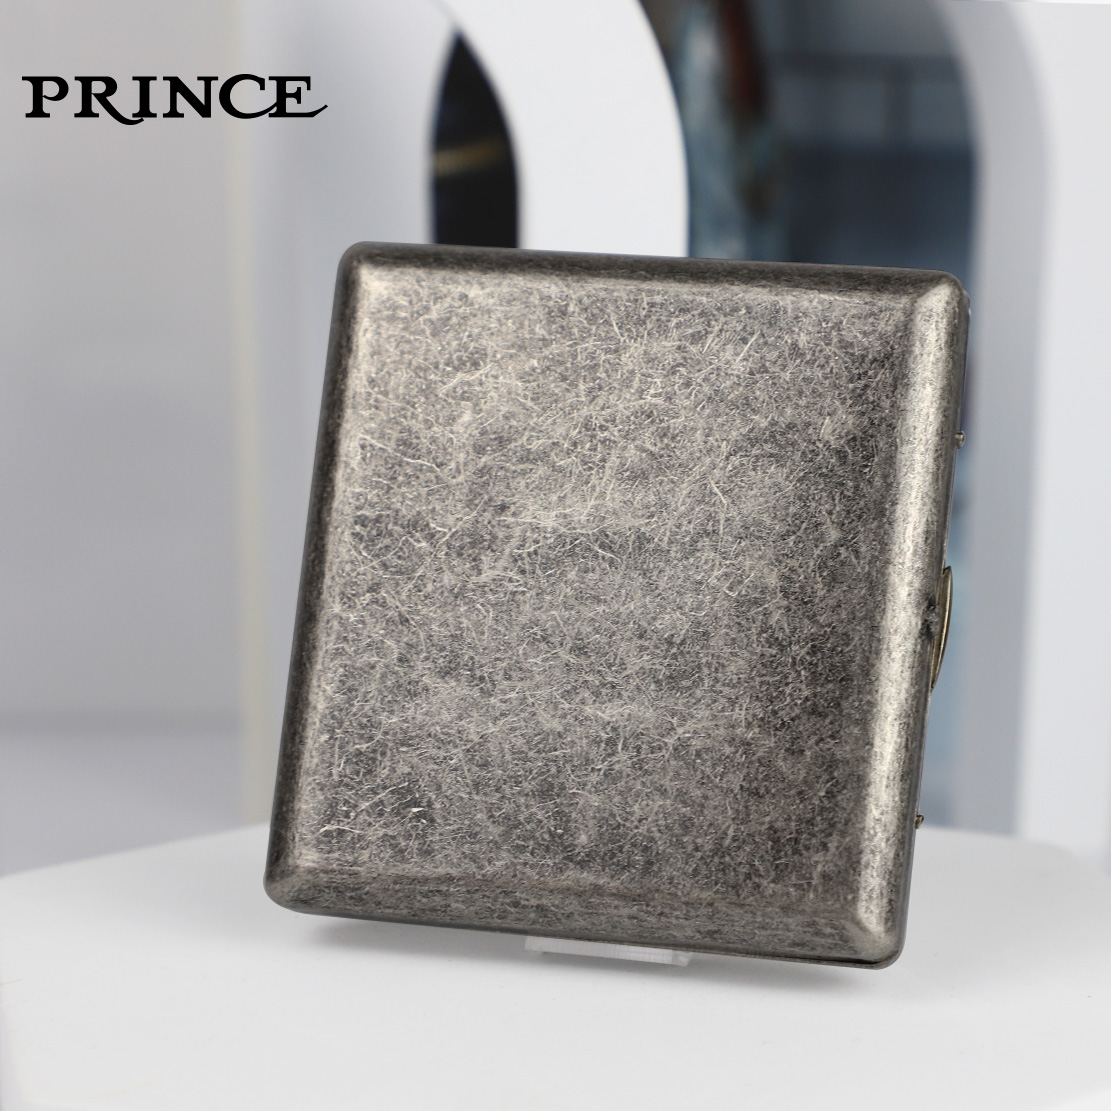 日本王子PRINCE烟盒12/20支装古银铜超薄便携男士礼品烟盒正品